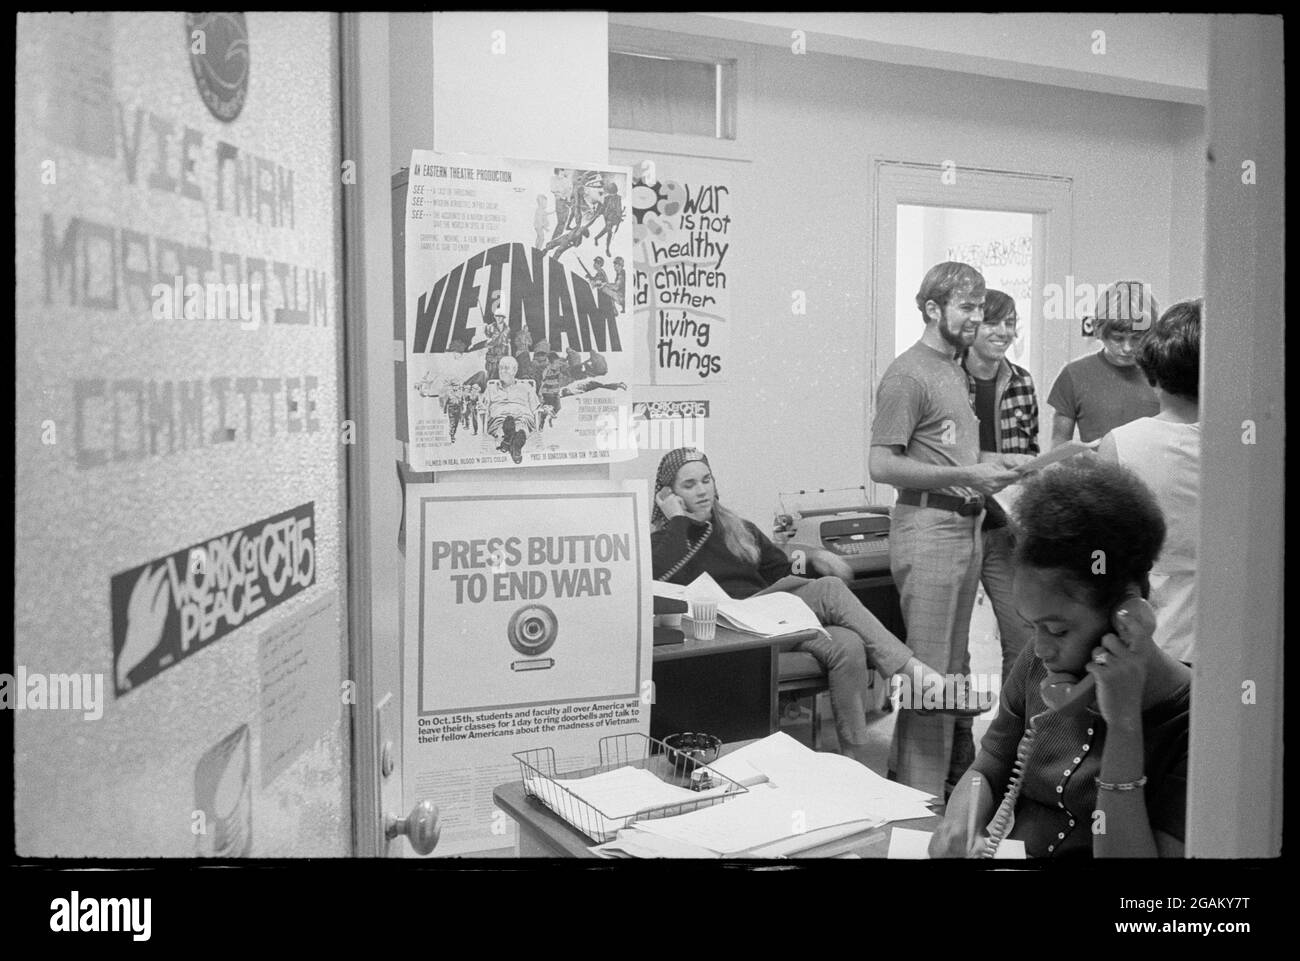 Mitarbeiter und Wohltäter versammeln sich am Tag der landesweiten Antikriegsdemonstrationen, die von der Gruppe, Washington, DC, 10/15/1969, koordiniert werden, in den Büros des vietnamesischen Moratoriumkomitees. (Foto von Warren K Leffler/US News & World Report Collection/RBM Vintage Images) Stockfoto